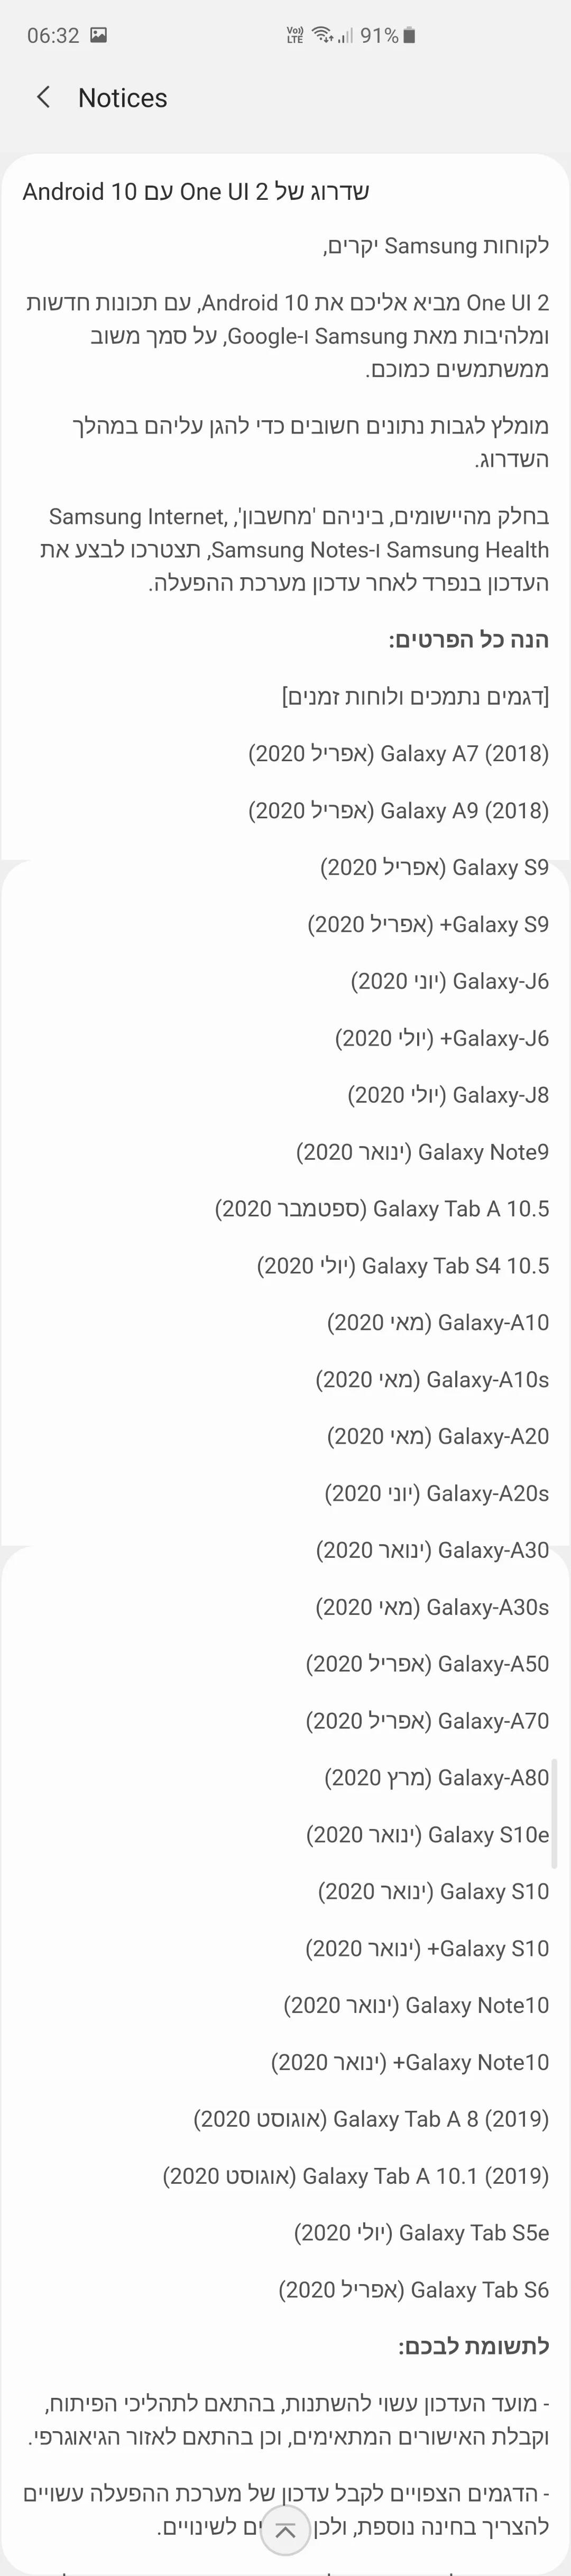 fecha de lanzamiento de android 10 teléfonos samsung